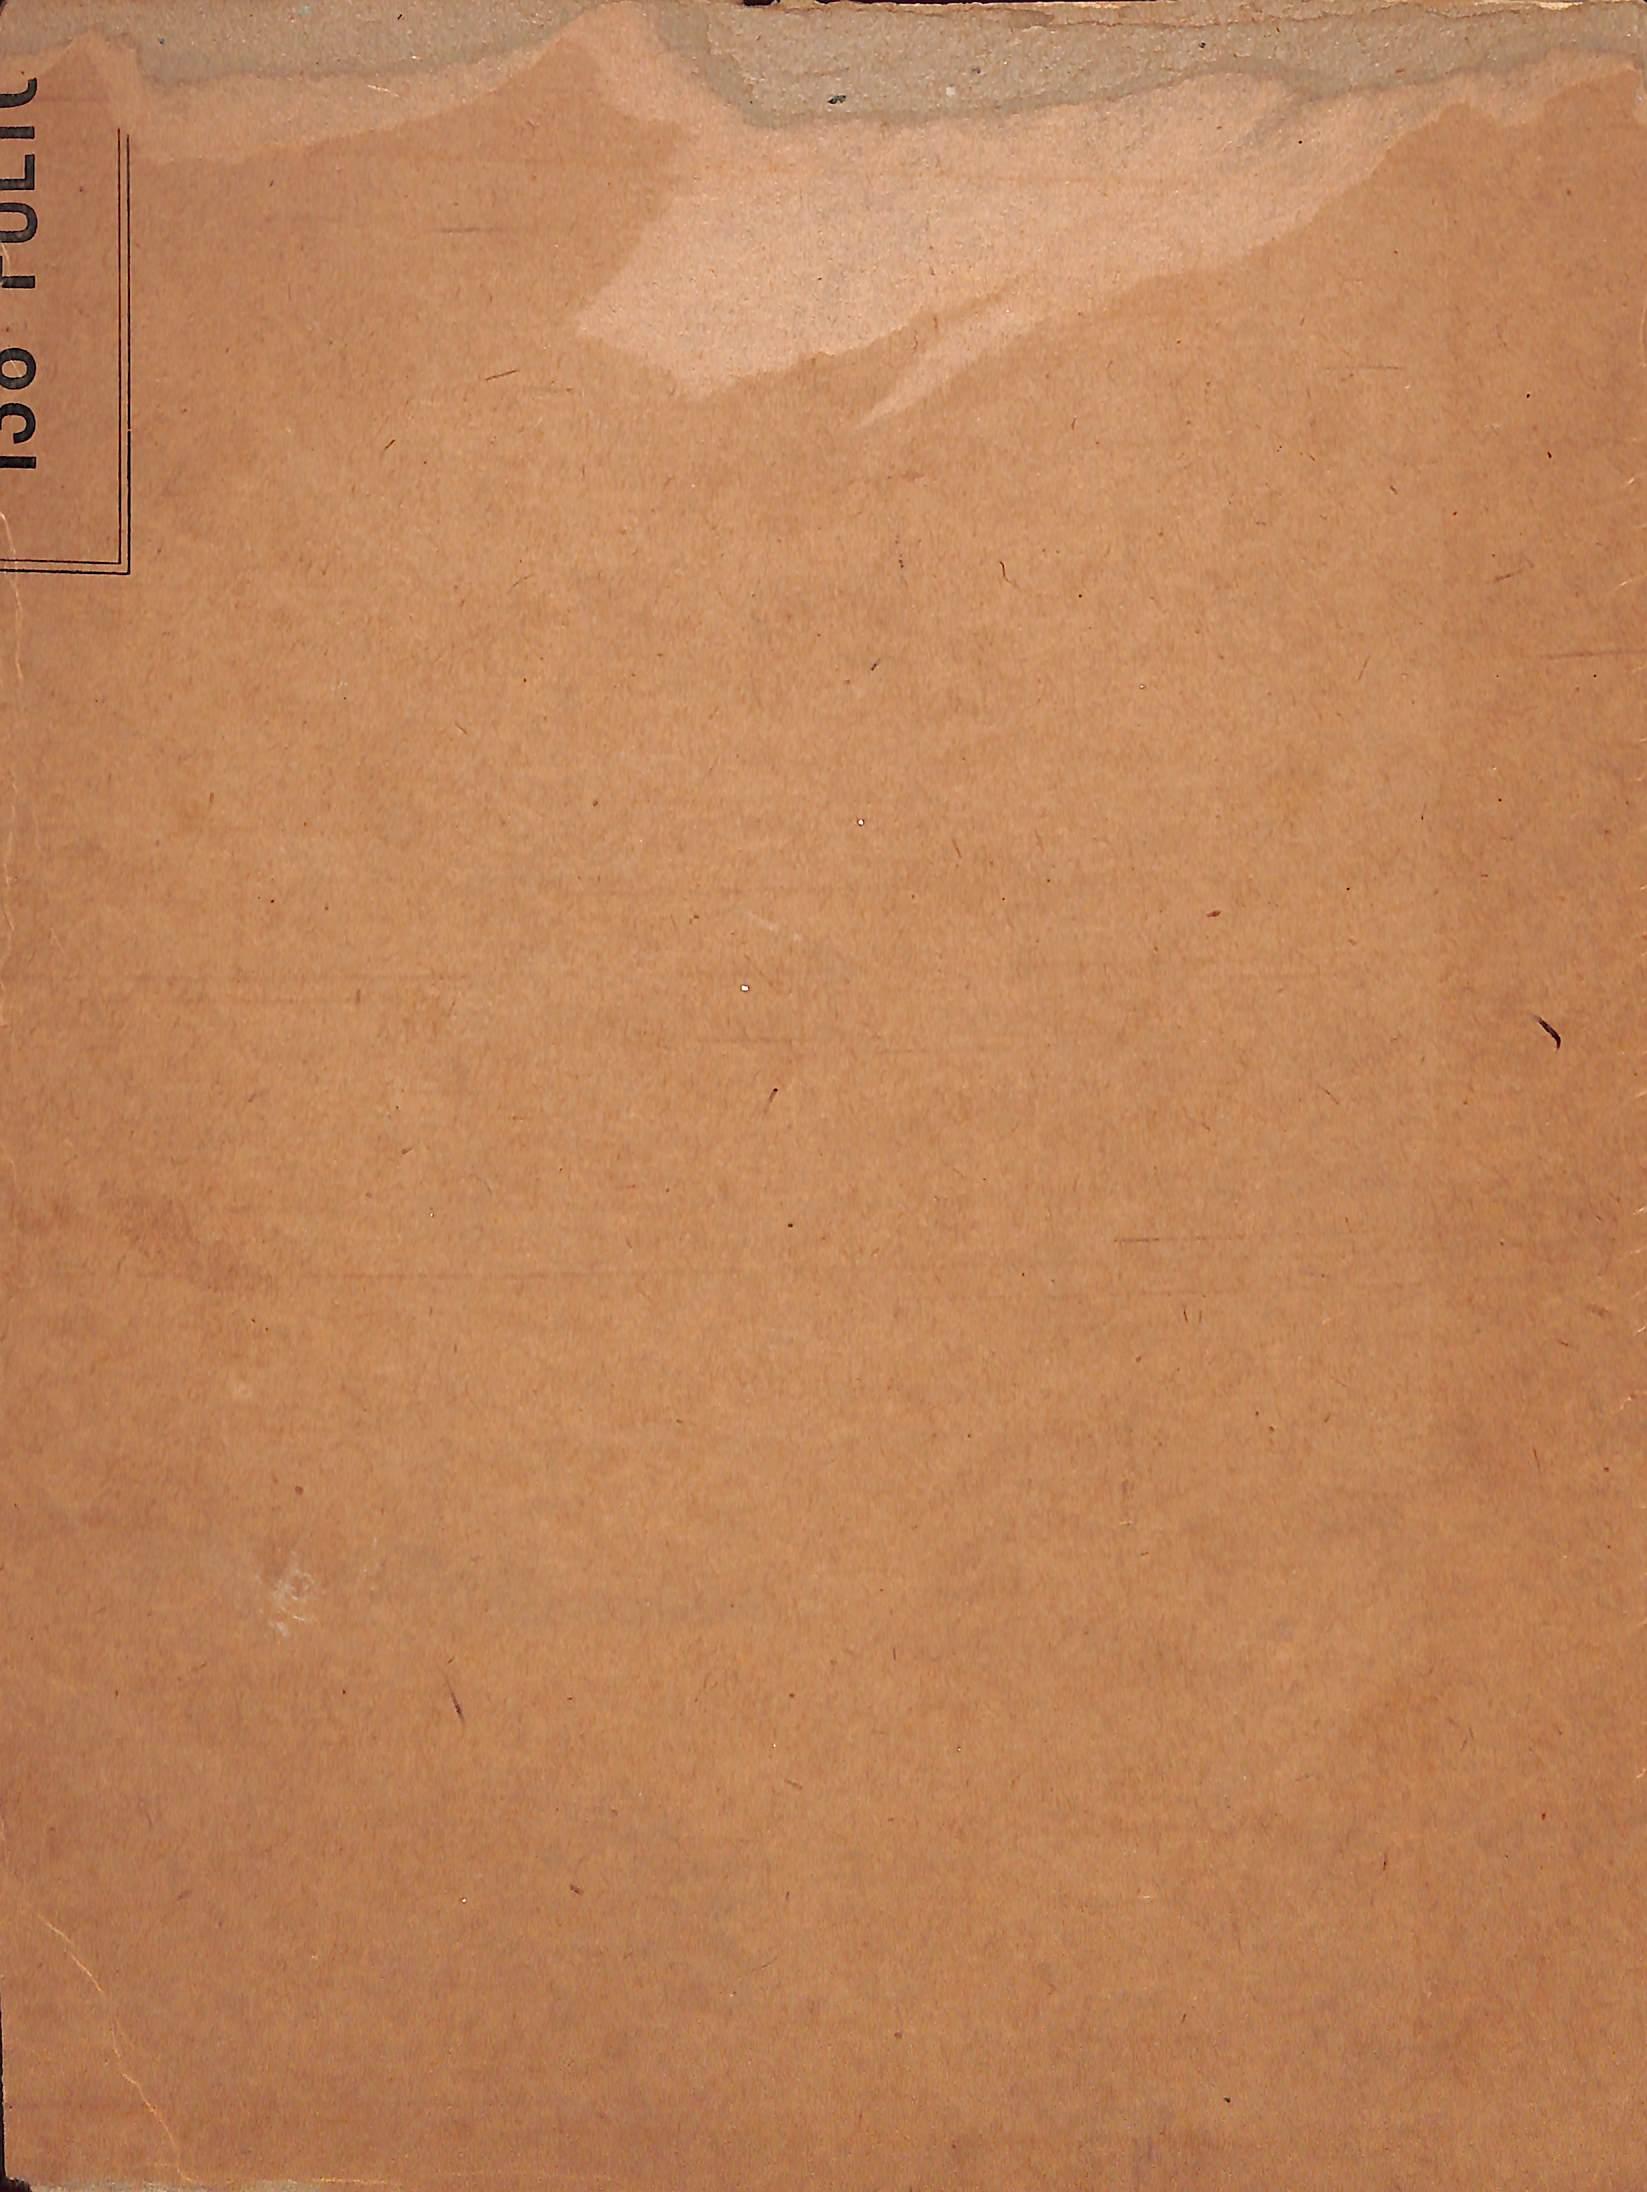 Très tôt, en 1921, dessin à la plume et à l'encre sur carton de Paul Brown
 
Sz : 10 3/4 